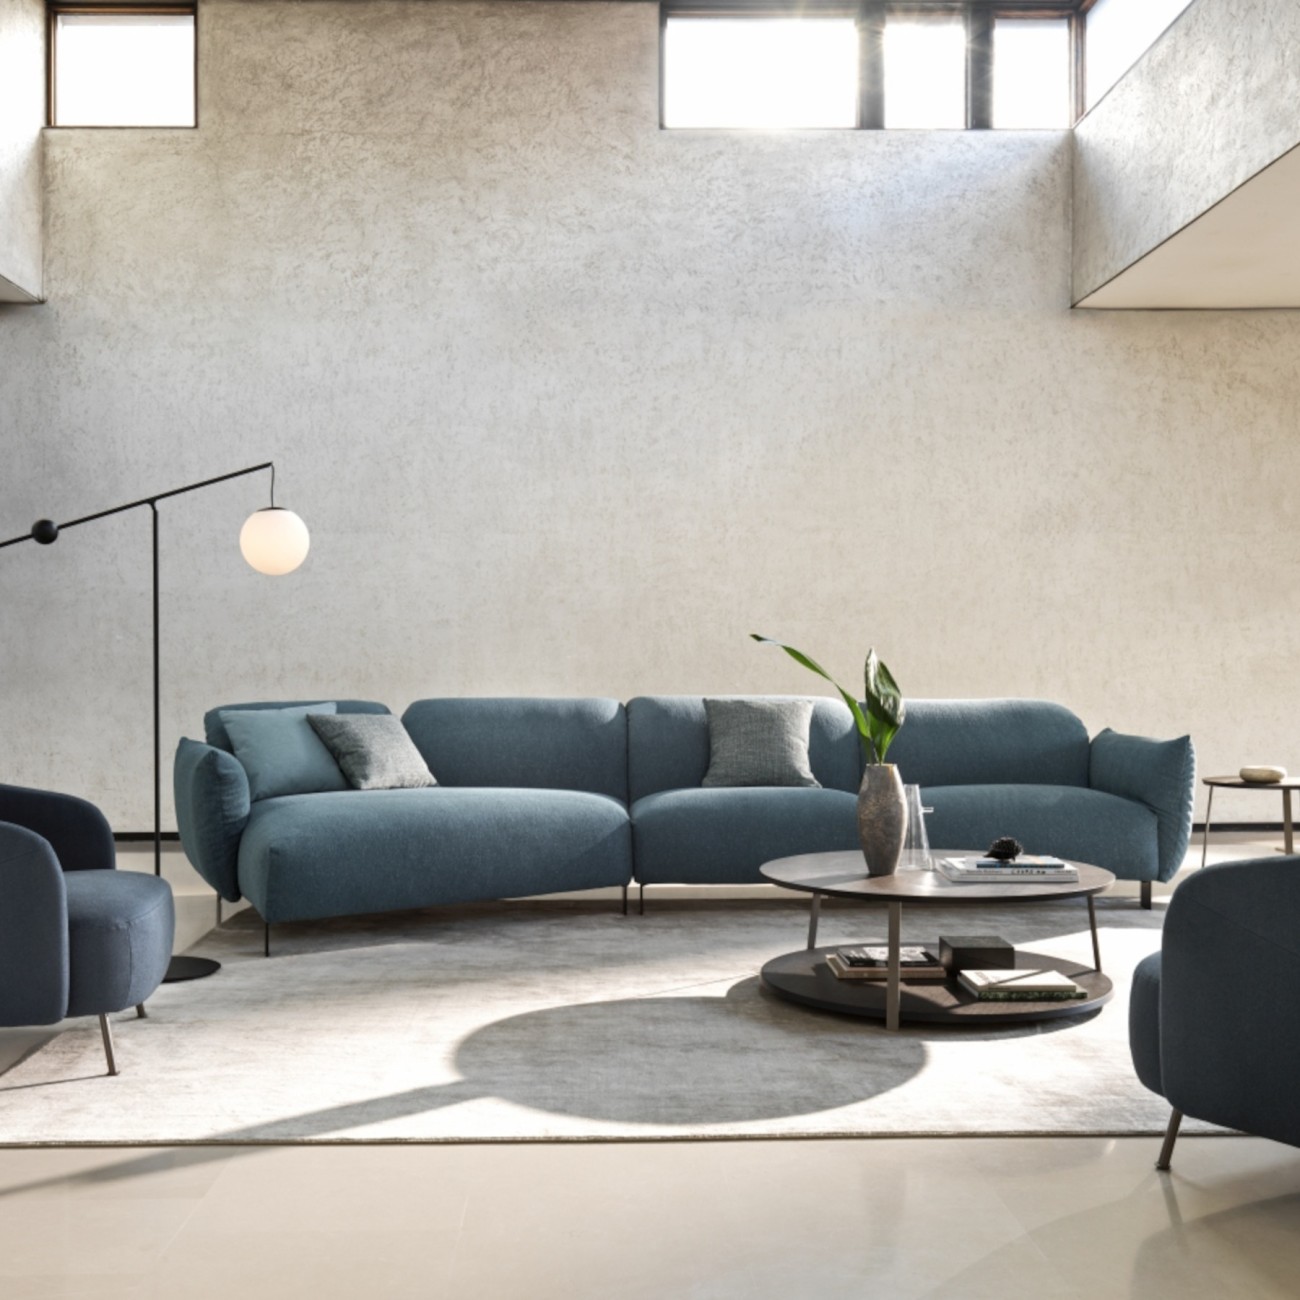 Blum Modular Sofa Ditre Italia